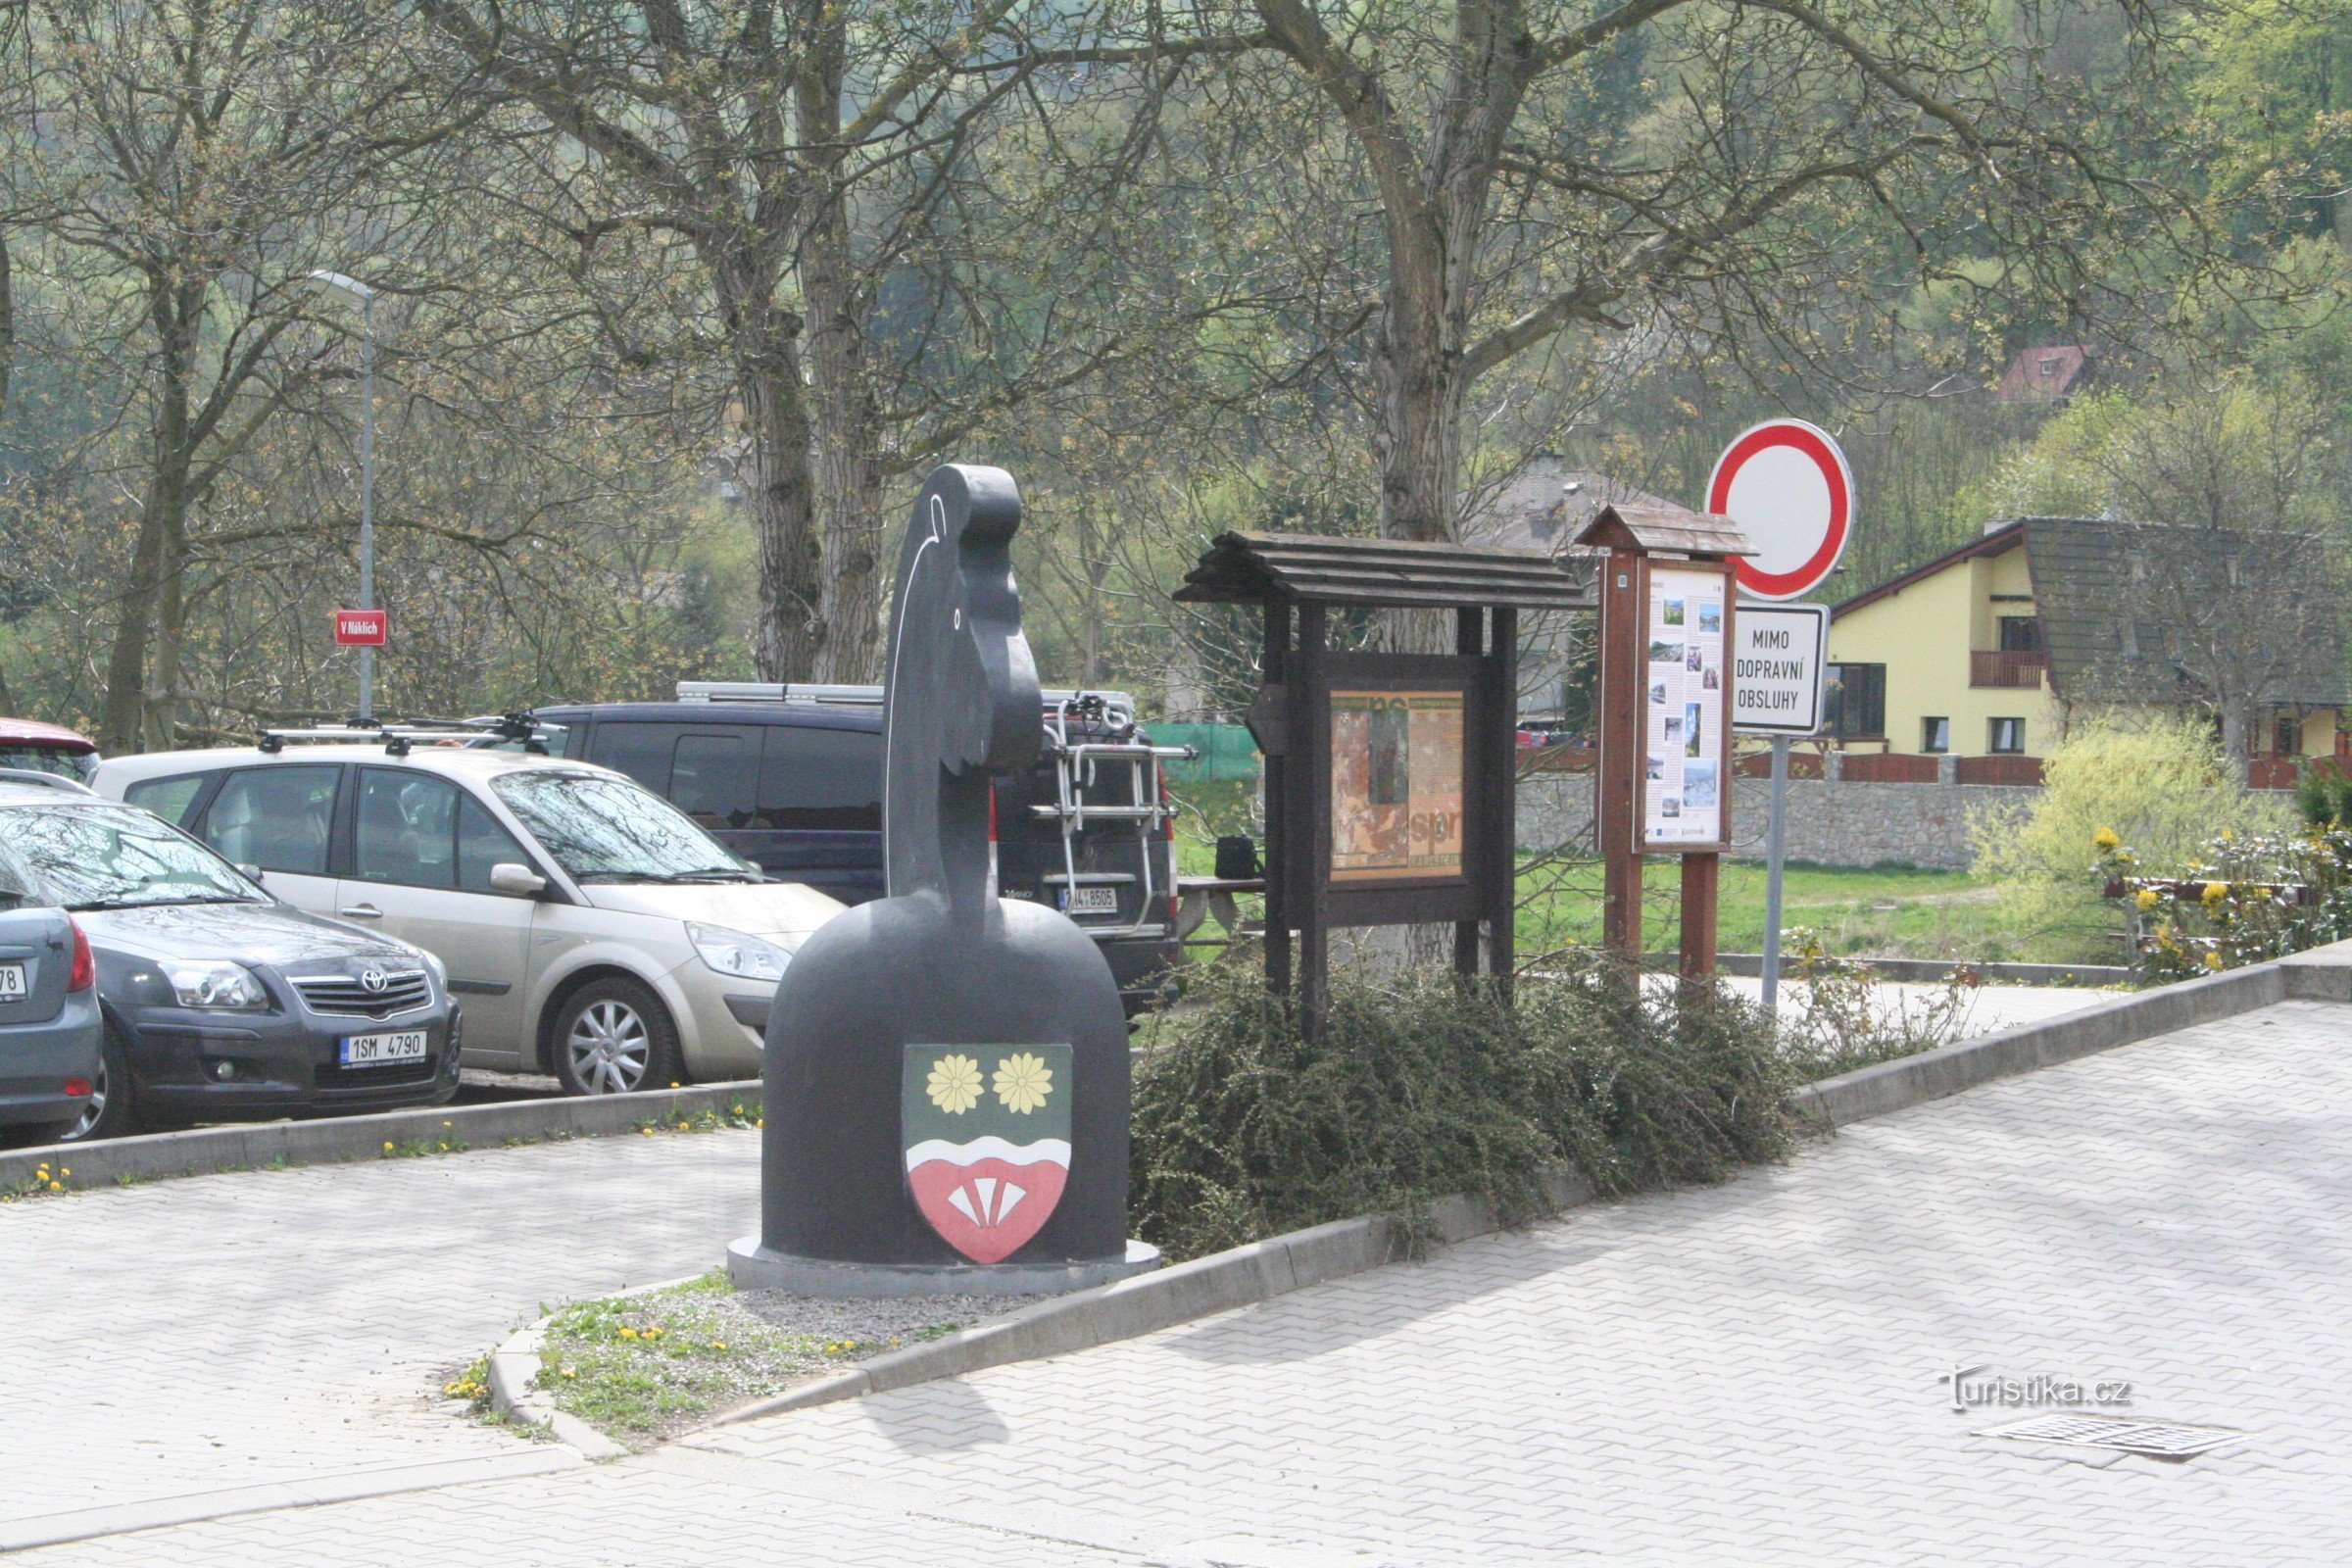 Black horse in Serbia